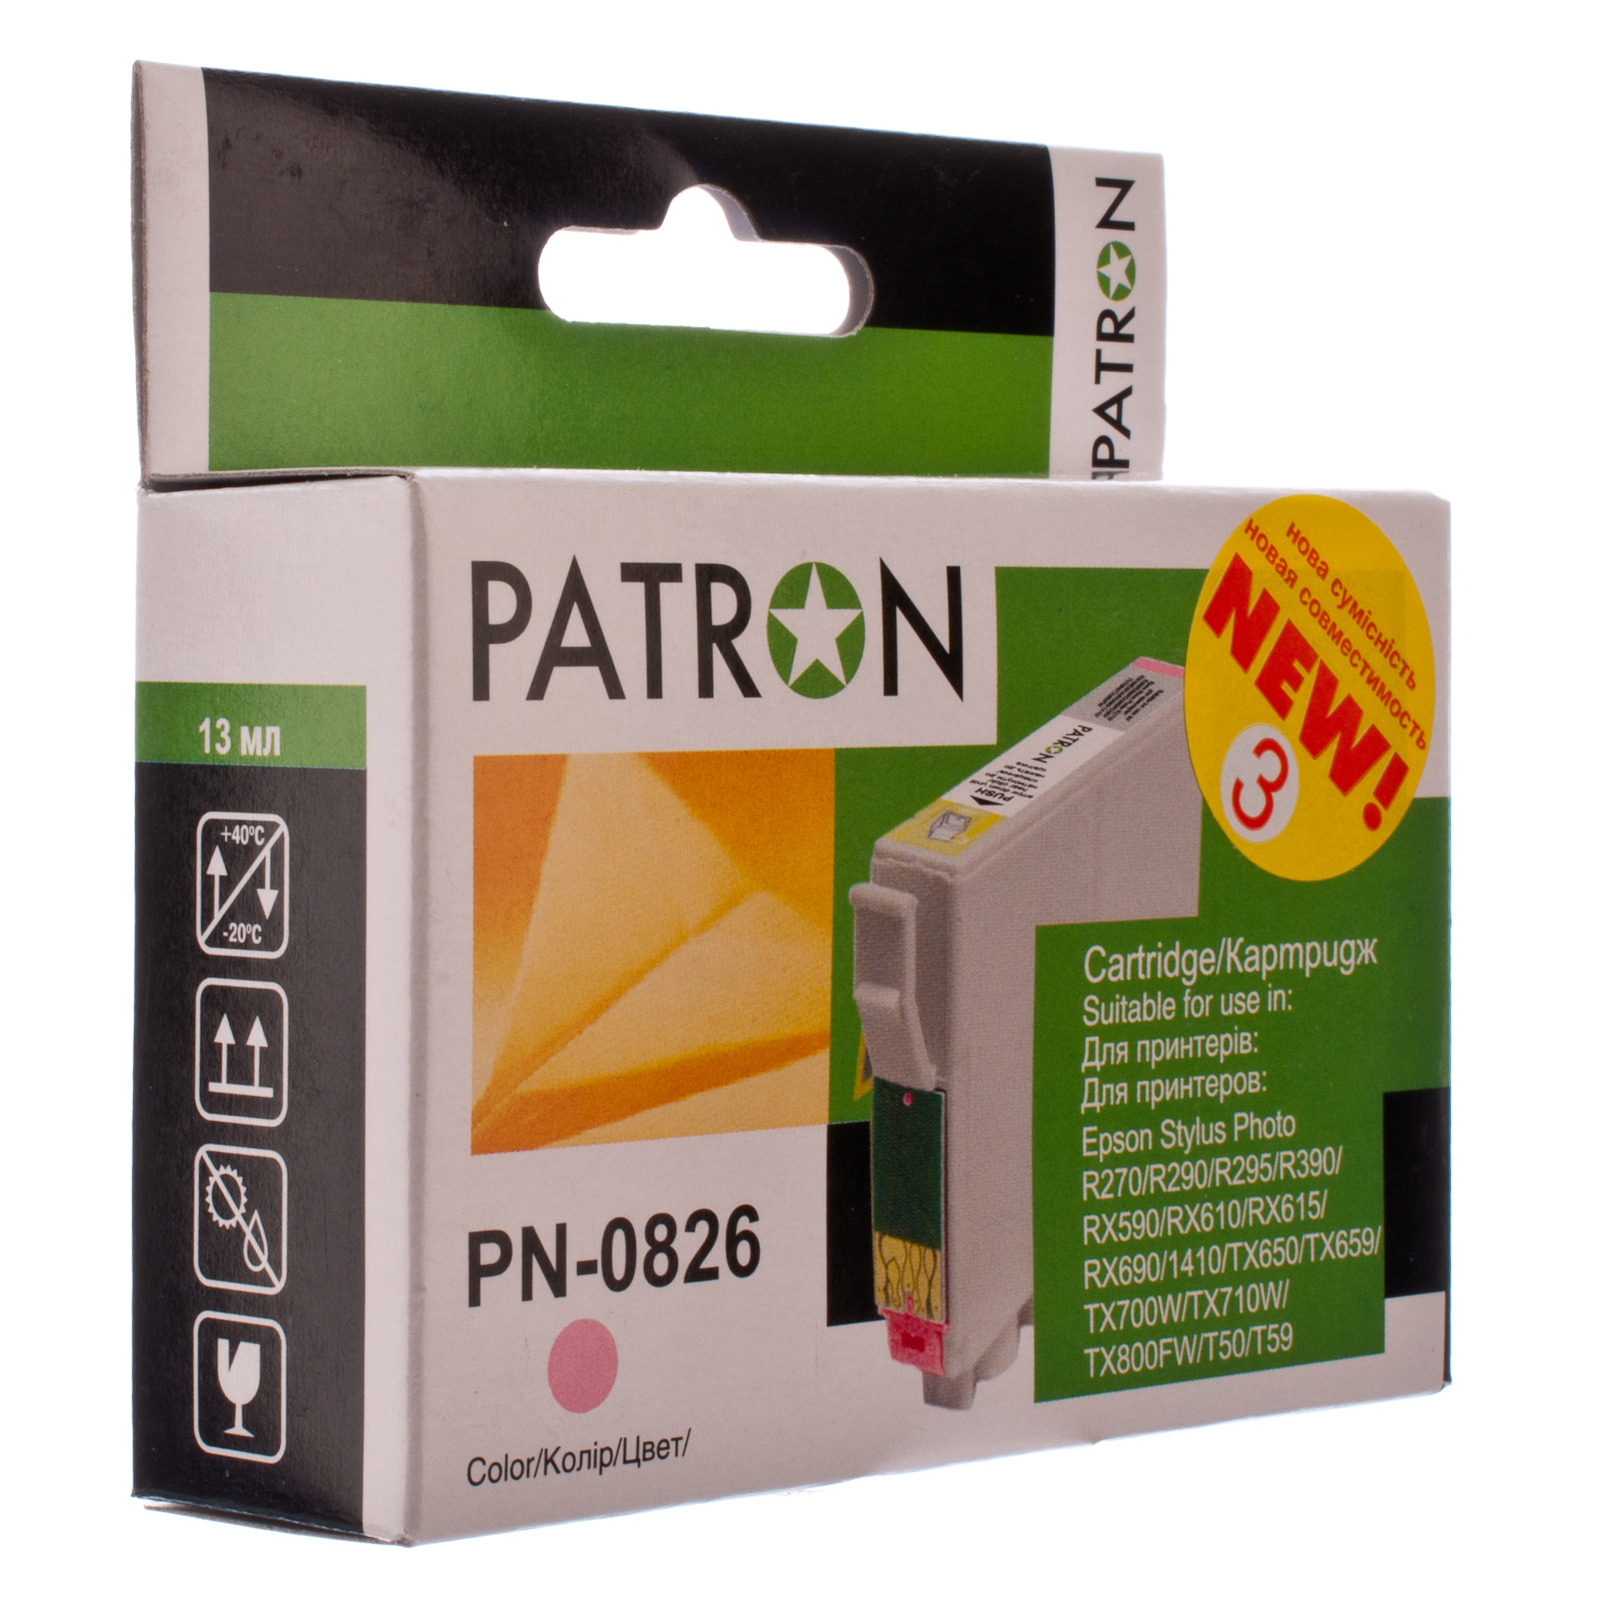 Картридж Patron для EPSON R270/290/390/RX590 MAGENTA (PN-0823) (CI-EPS-T08134-M3-PN)